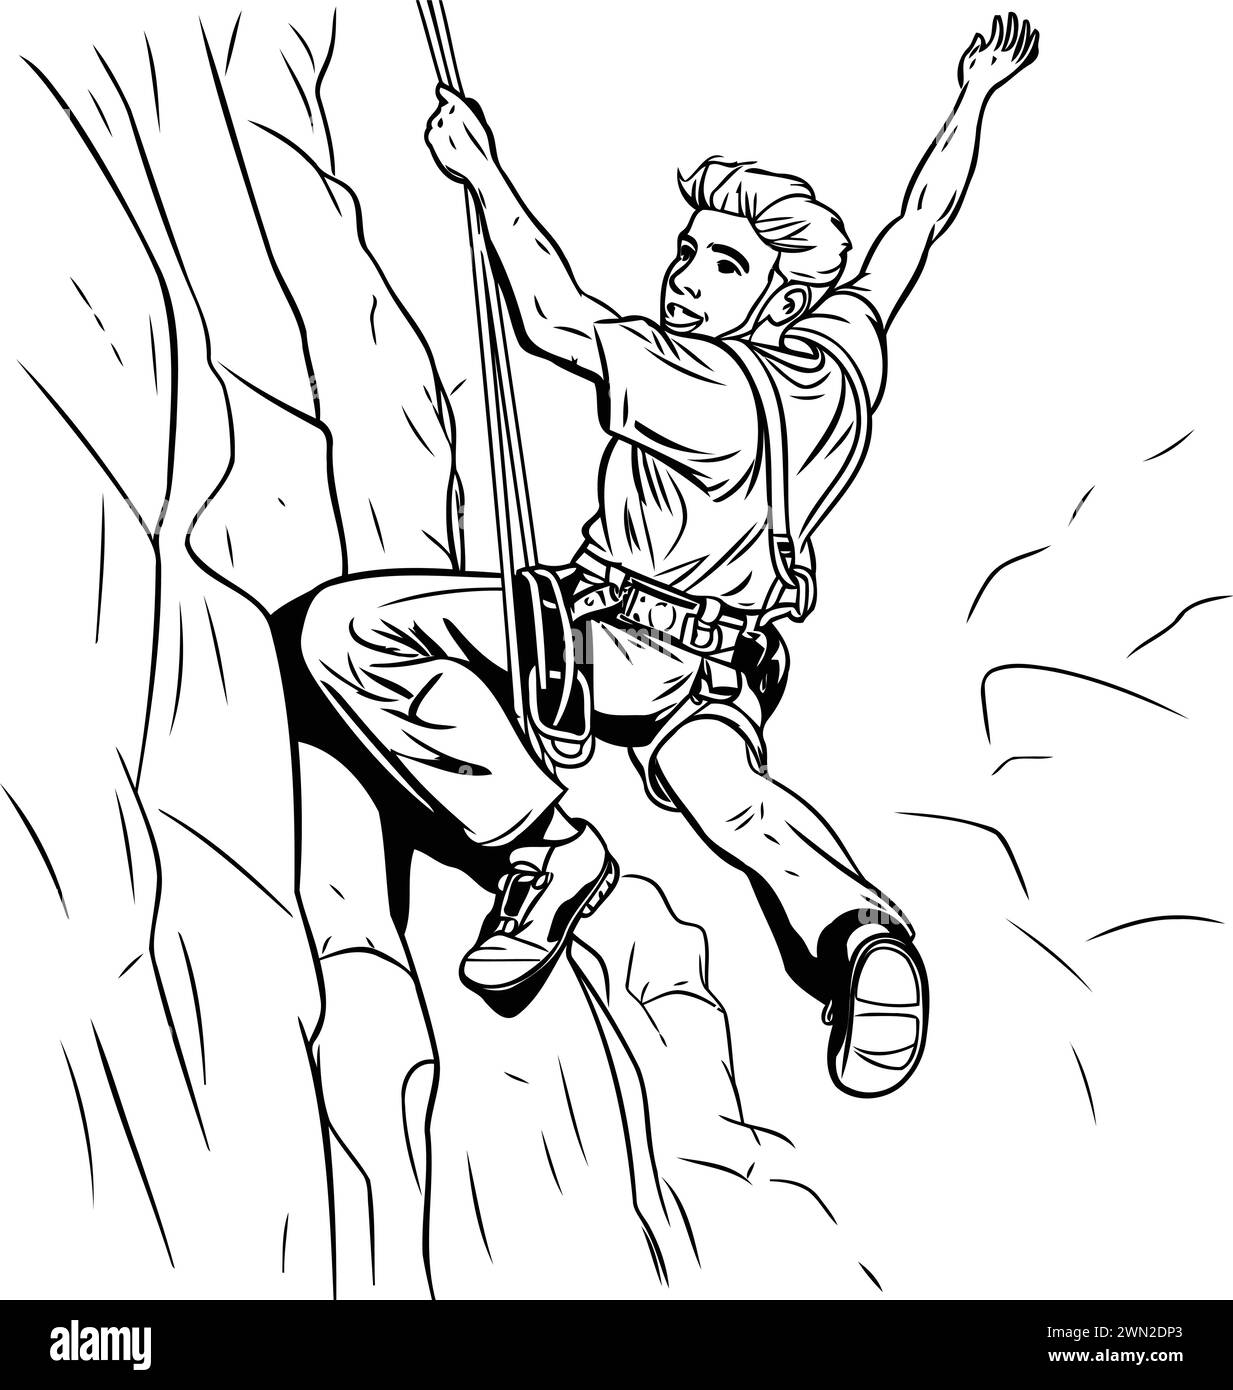 illustrazione di un arrampicatore che salta sopra una scogliera con le mani in alto Illustrazione Vettoriale